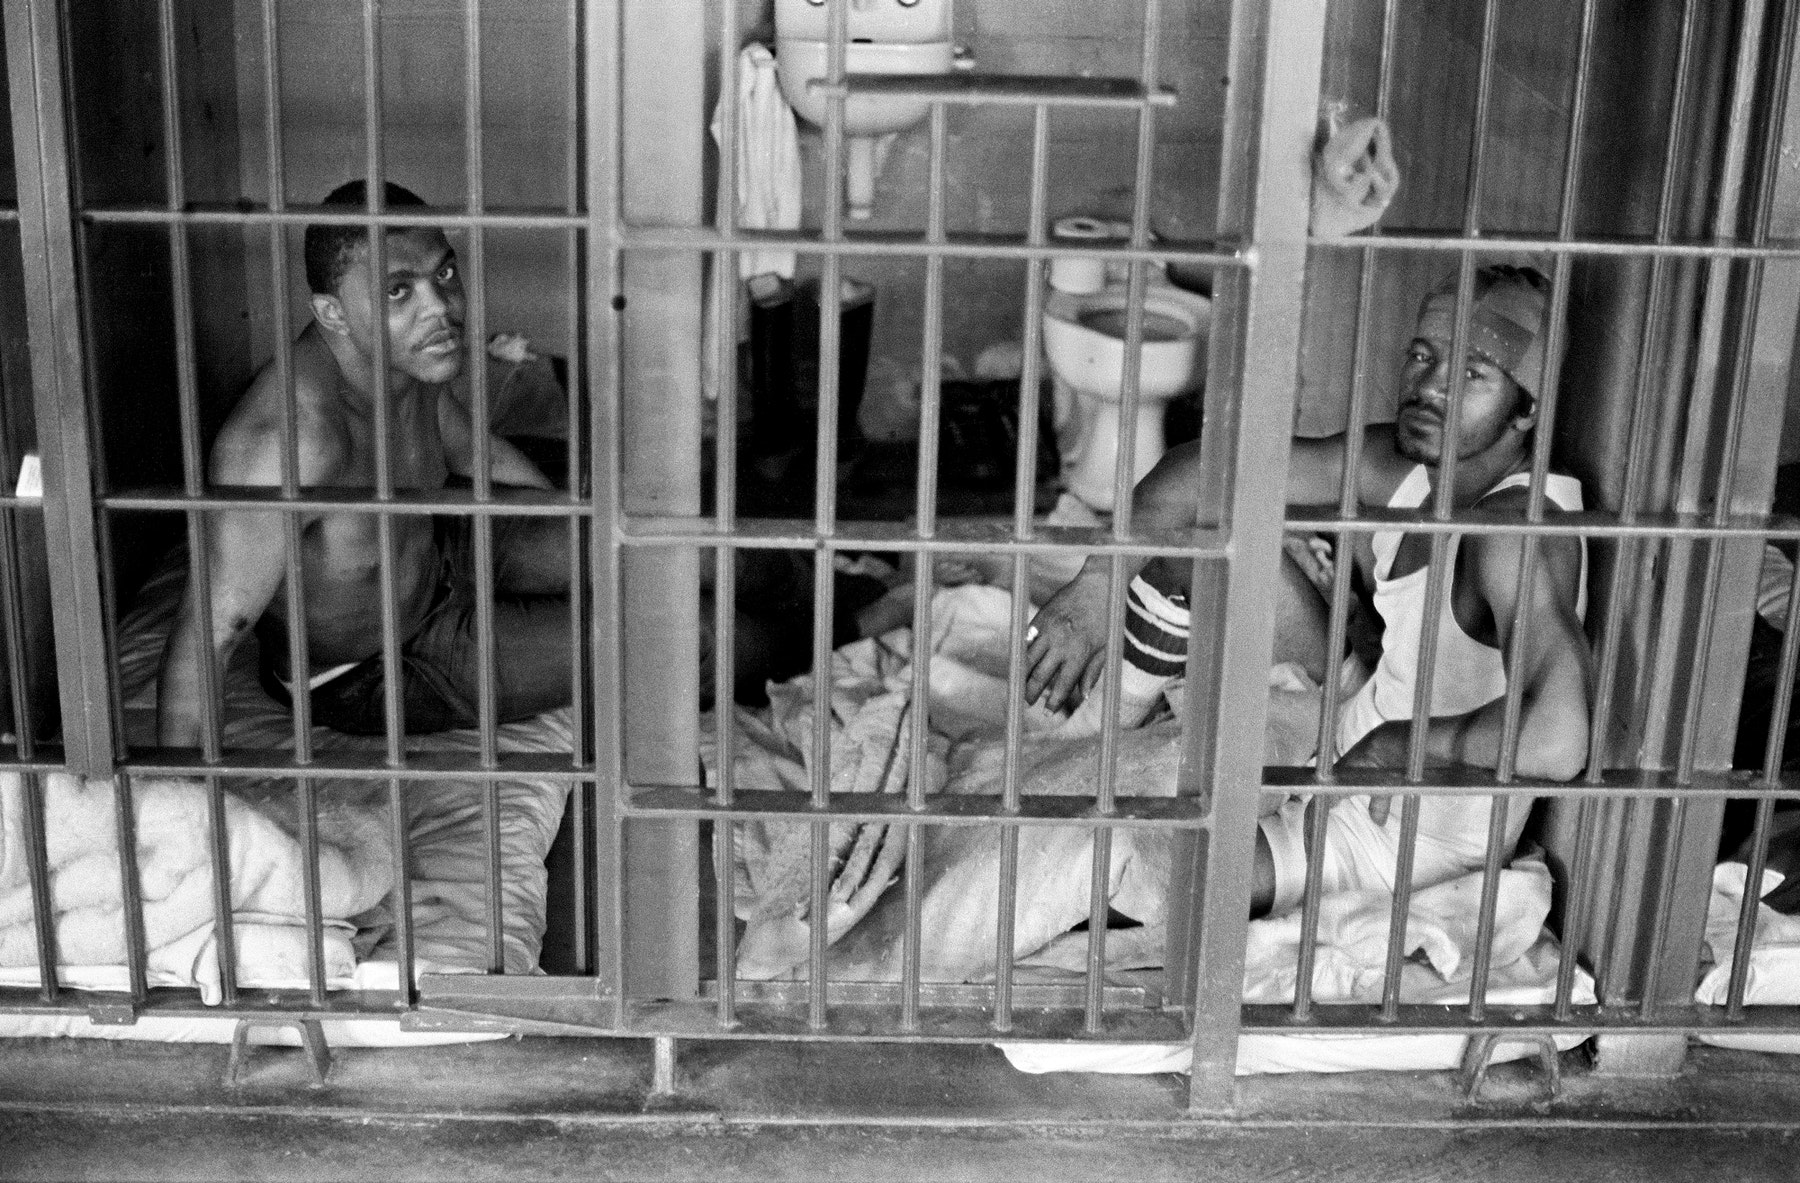 Keith Calhoun, celda de dos a seis por ocho pies en la prisión de Angola, 1980. Cortesía del artista.